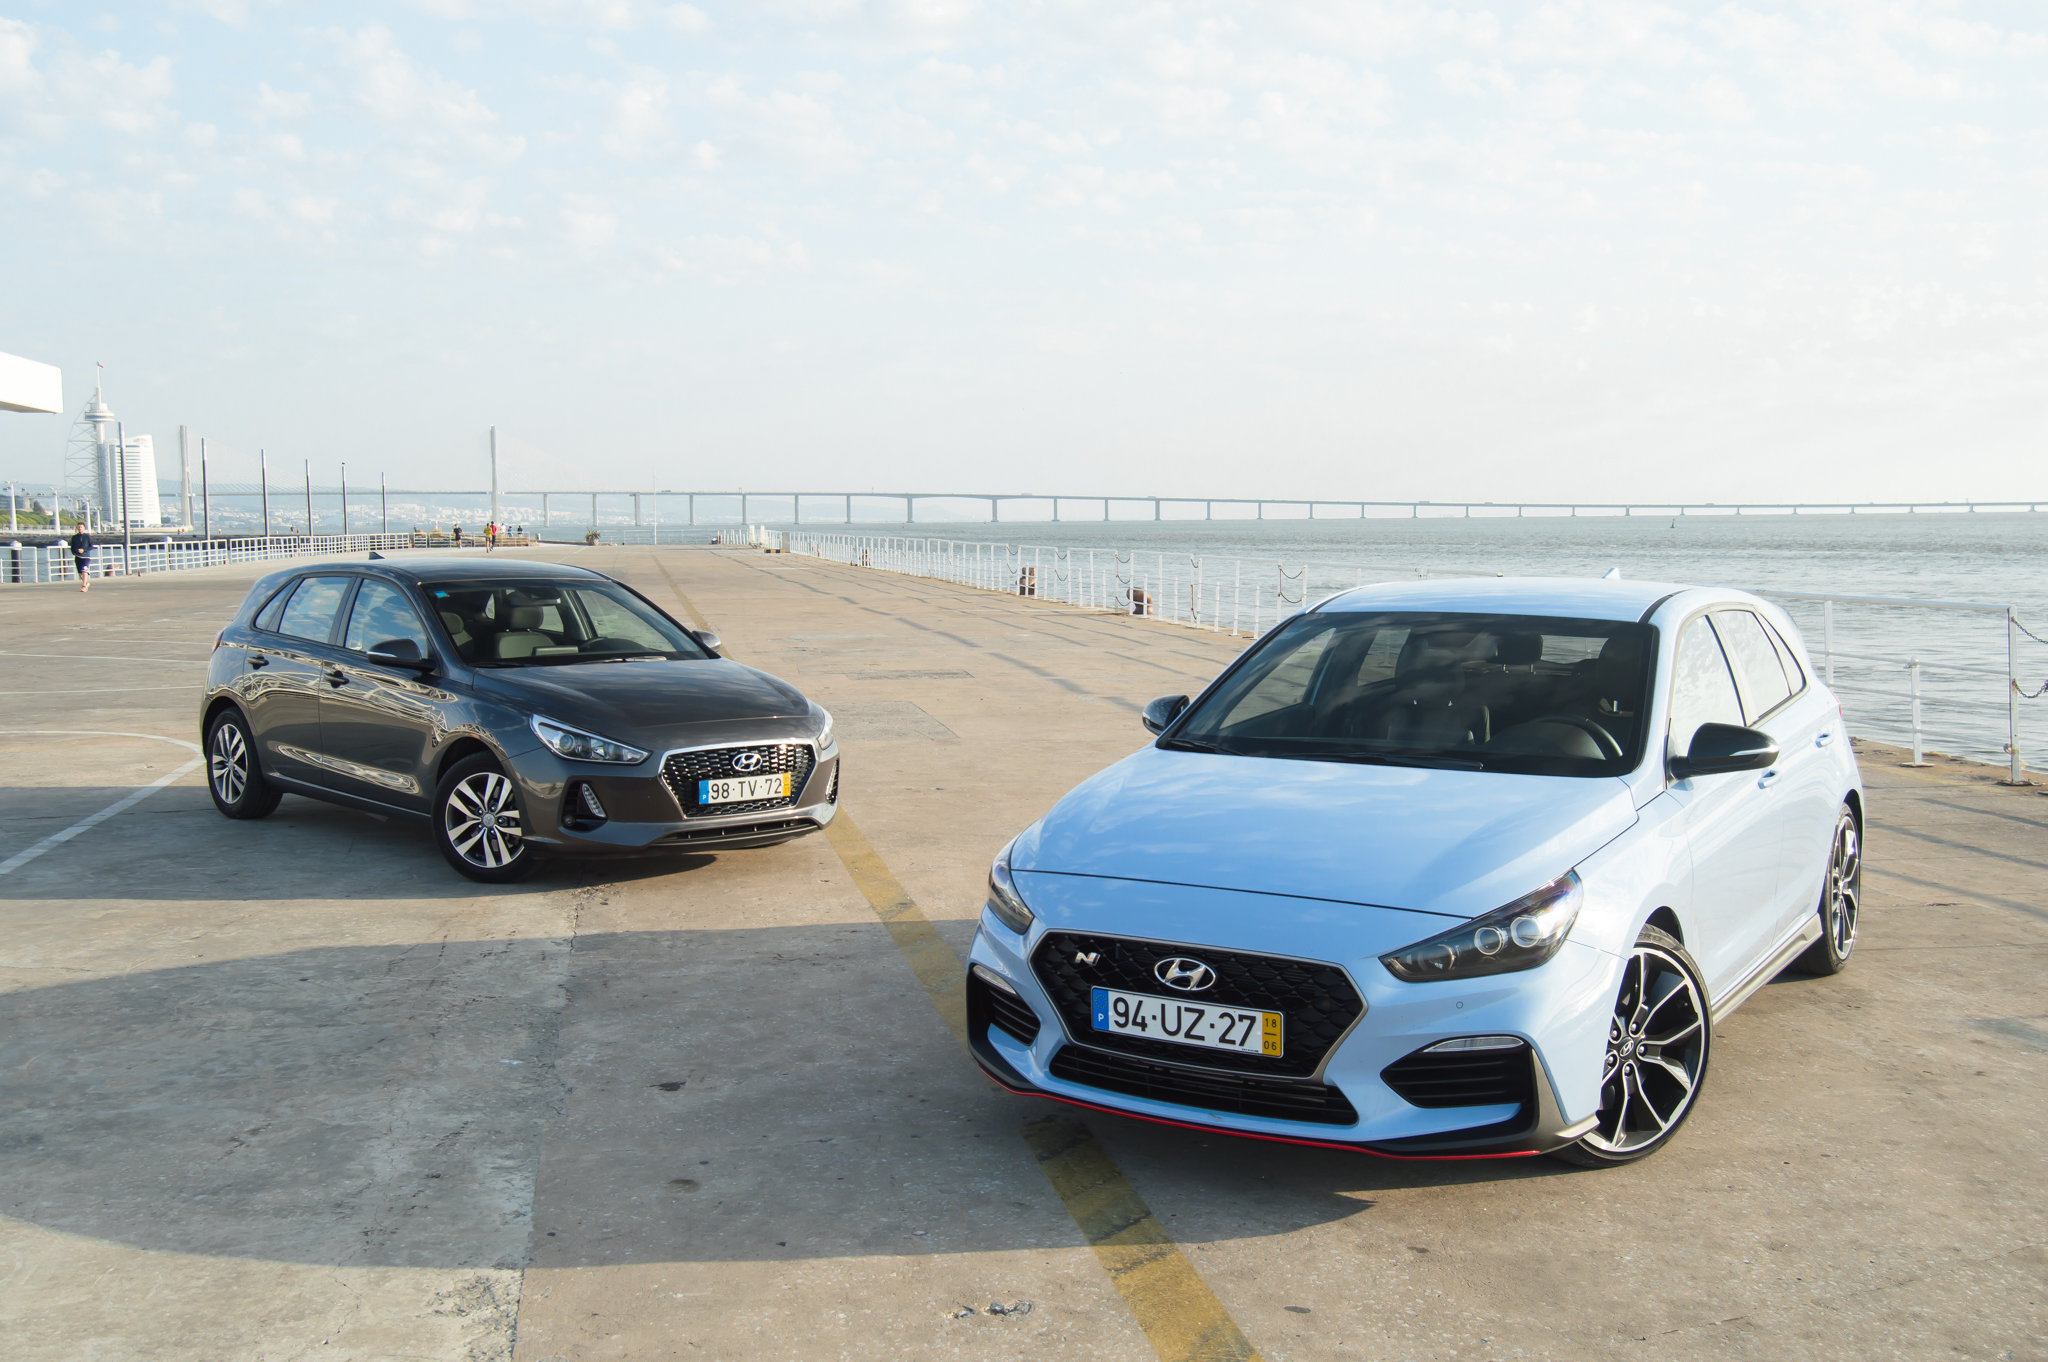 Comparámos um “normal” Hyundai i30 com o i30N Performance